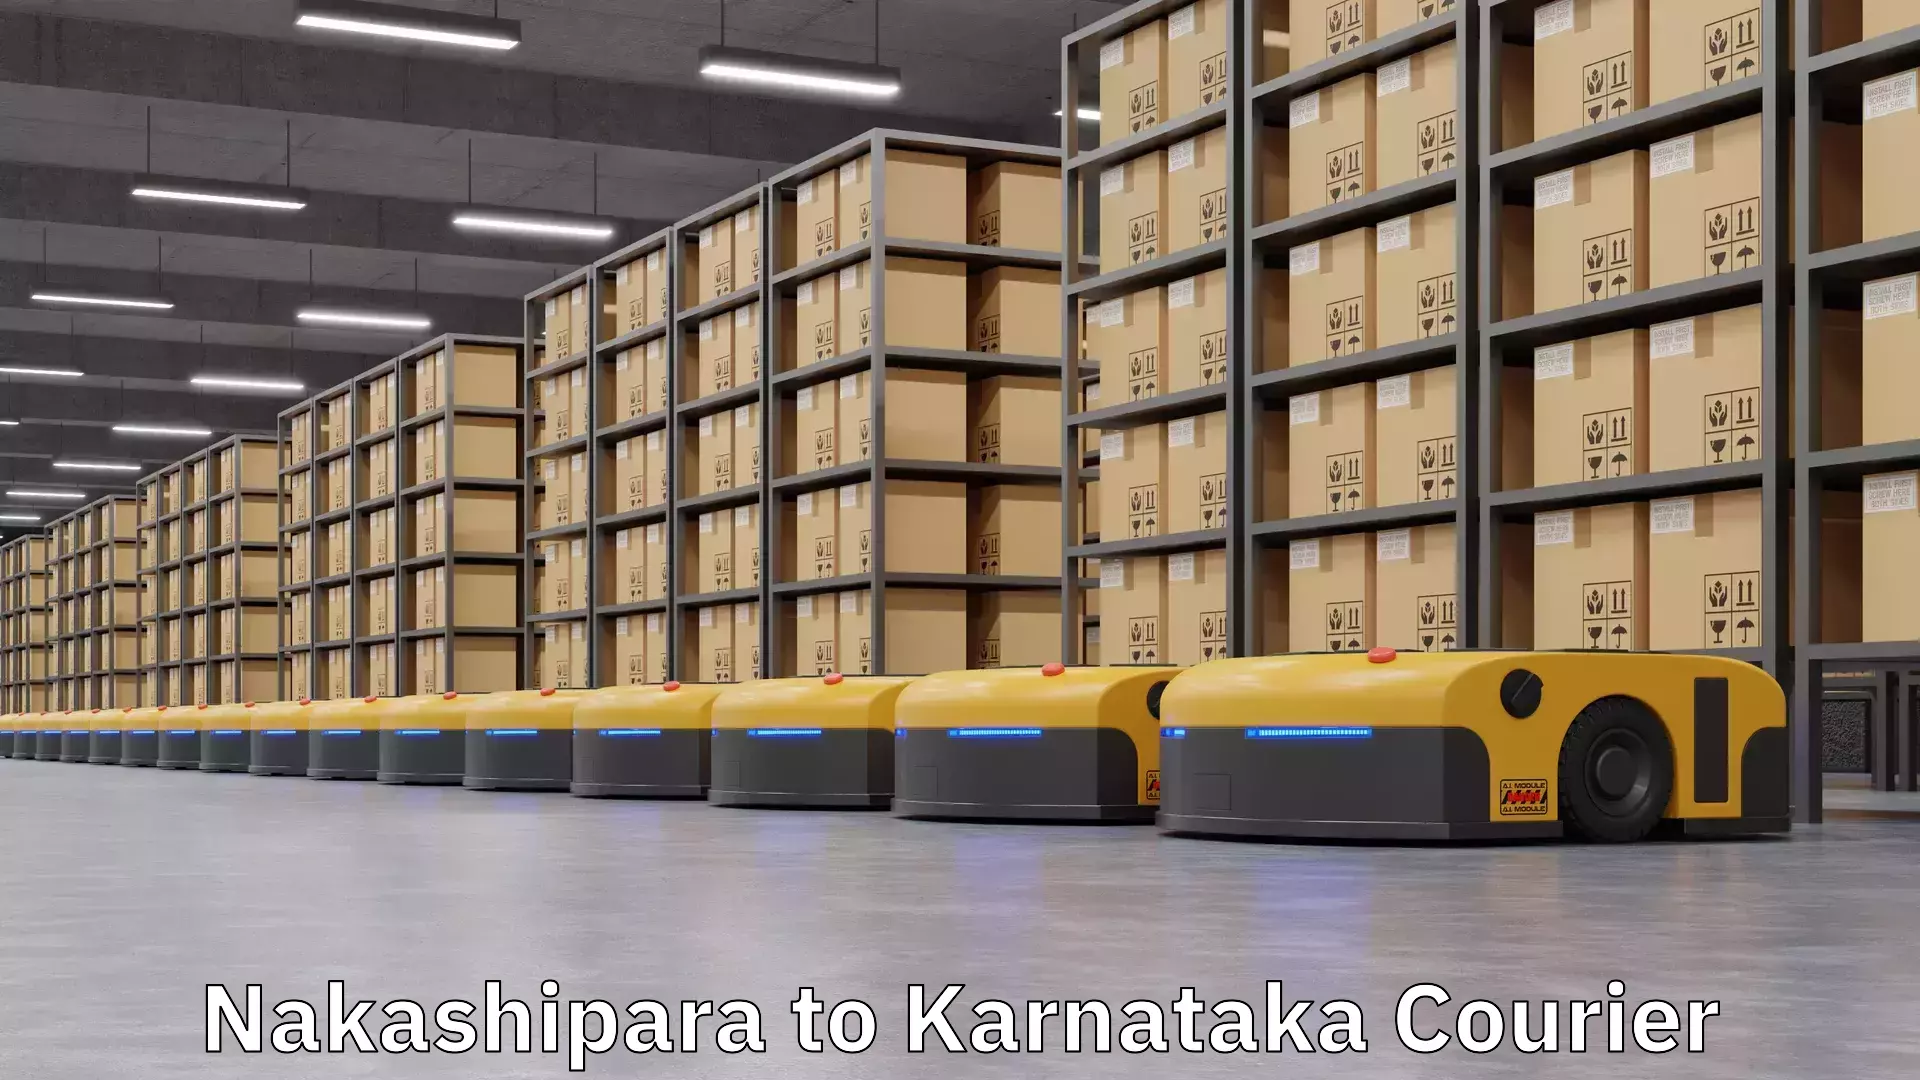 Global shipping networks Nakashipara to Karnataka